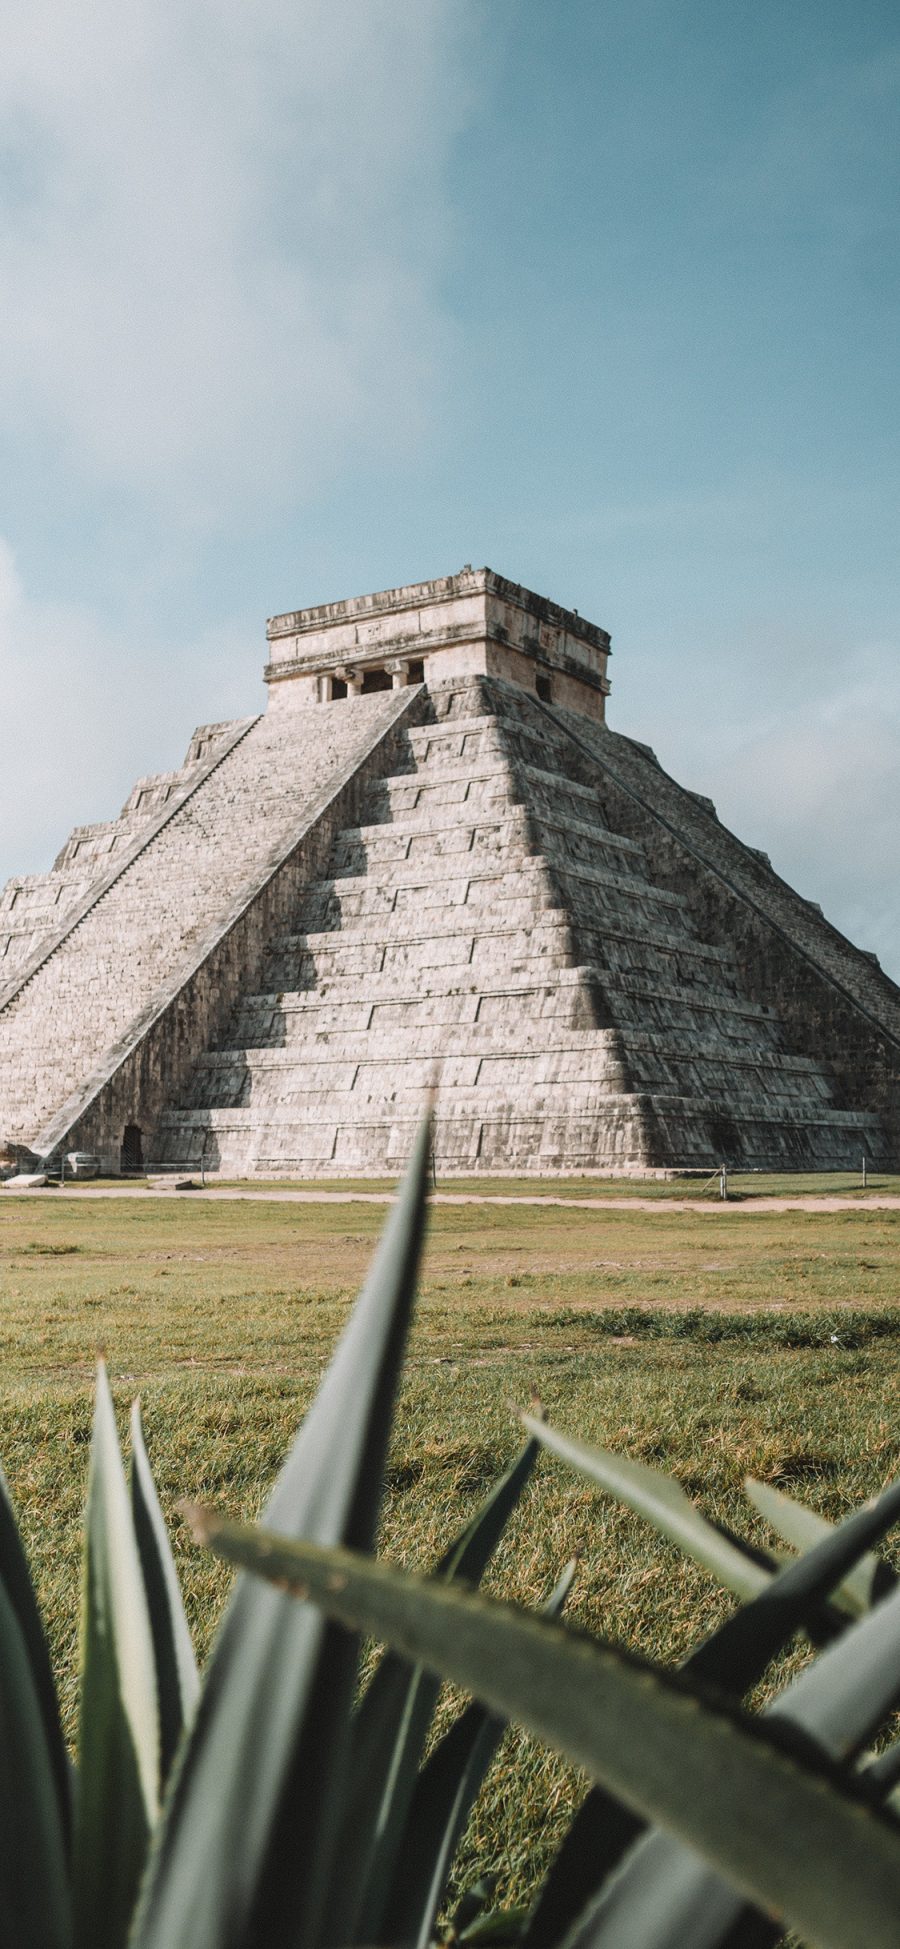 [2436×1125]玛雅库库尔坎金字塔 景点 历史文明 苹果手机壁纸图片